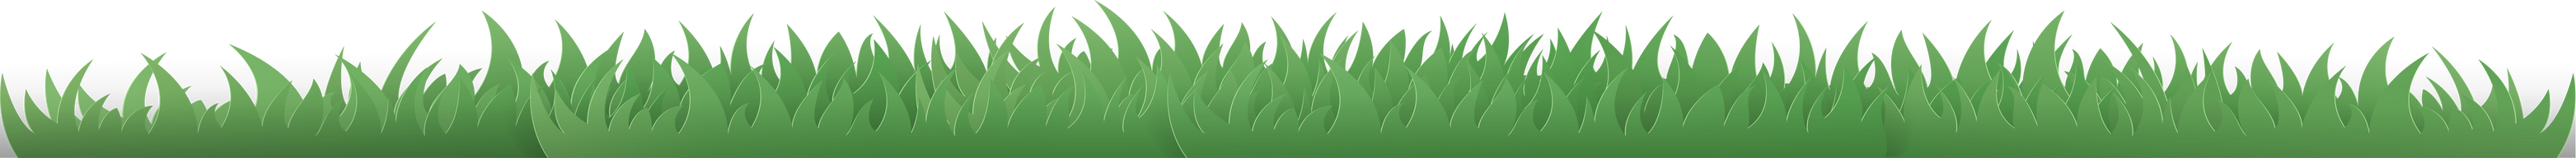 Green grass paper cut style.